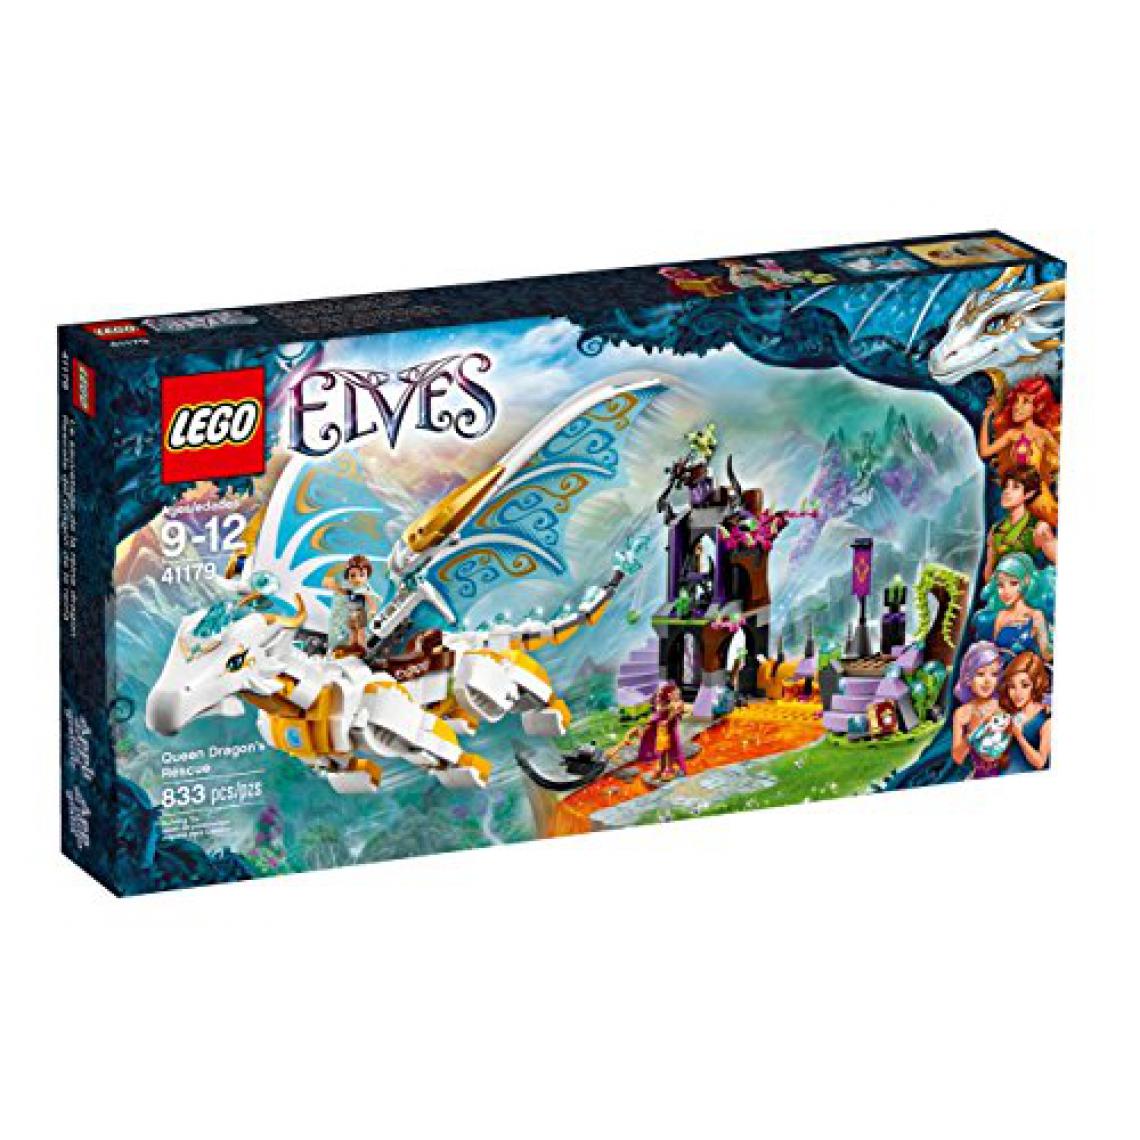 Lego - Le sauvetage de Lego (LEgO) Elf Queen Dragon 41179 - Briques et blocs